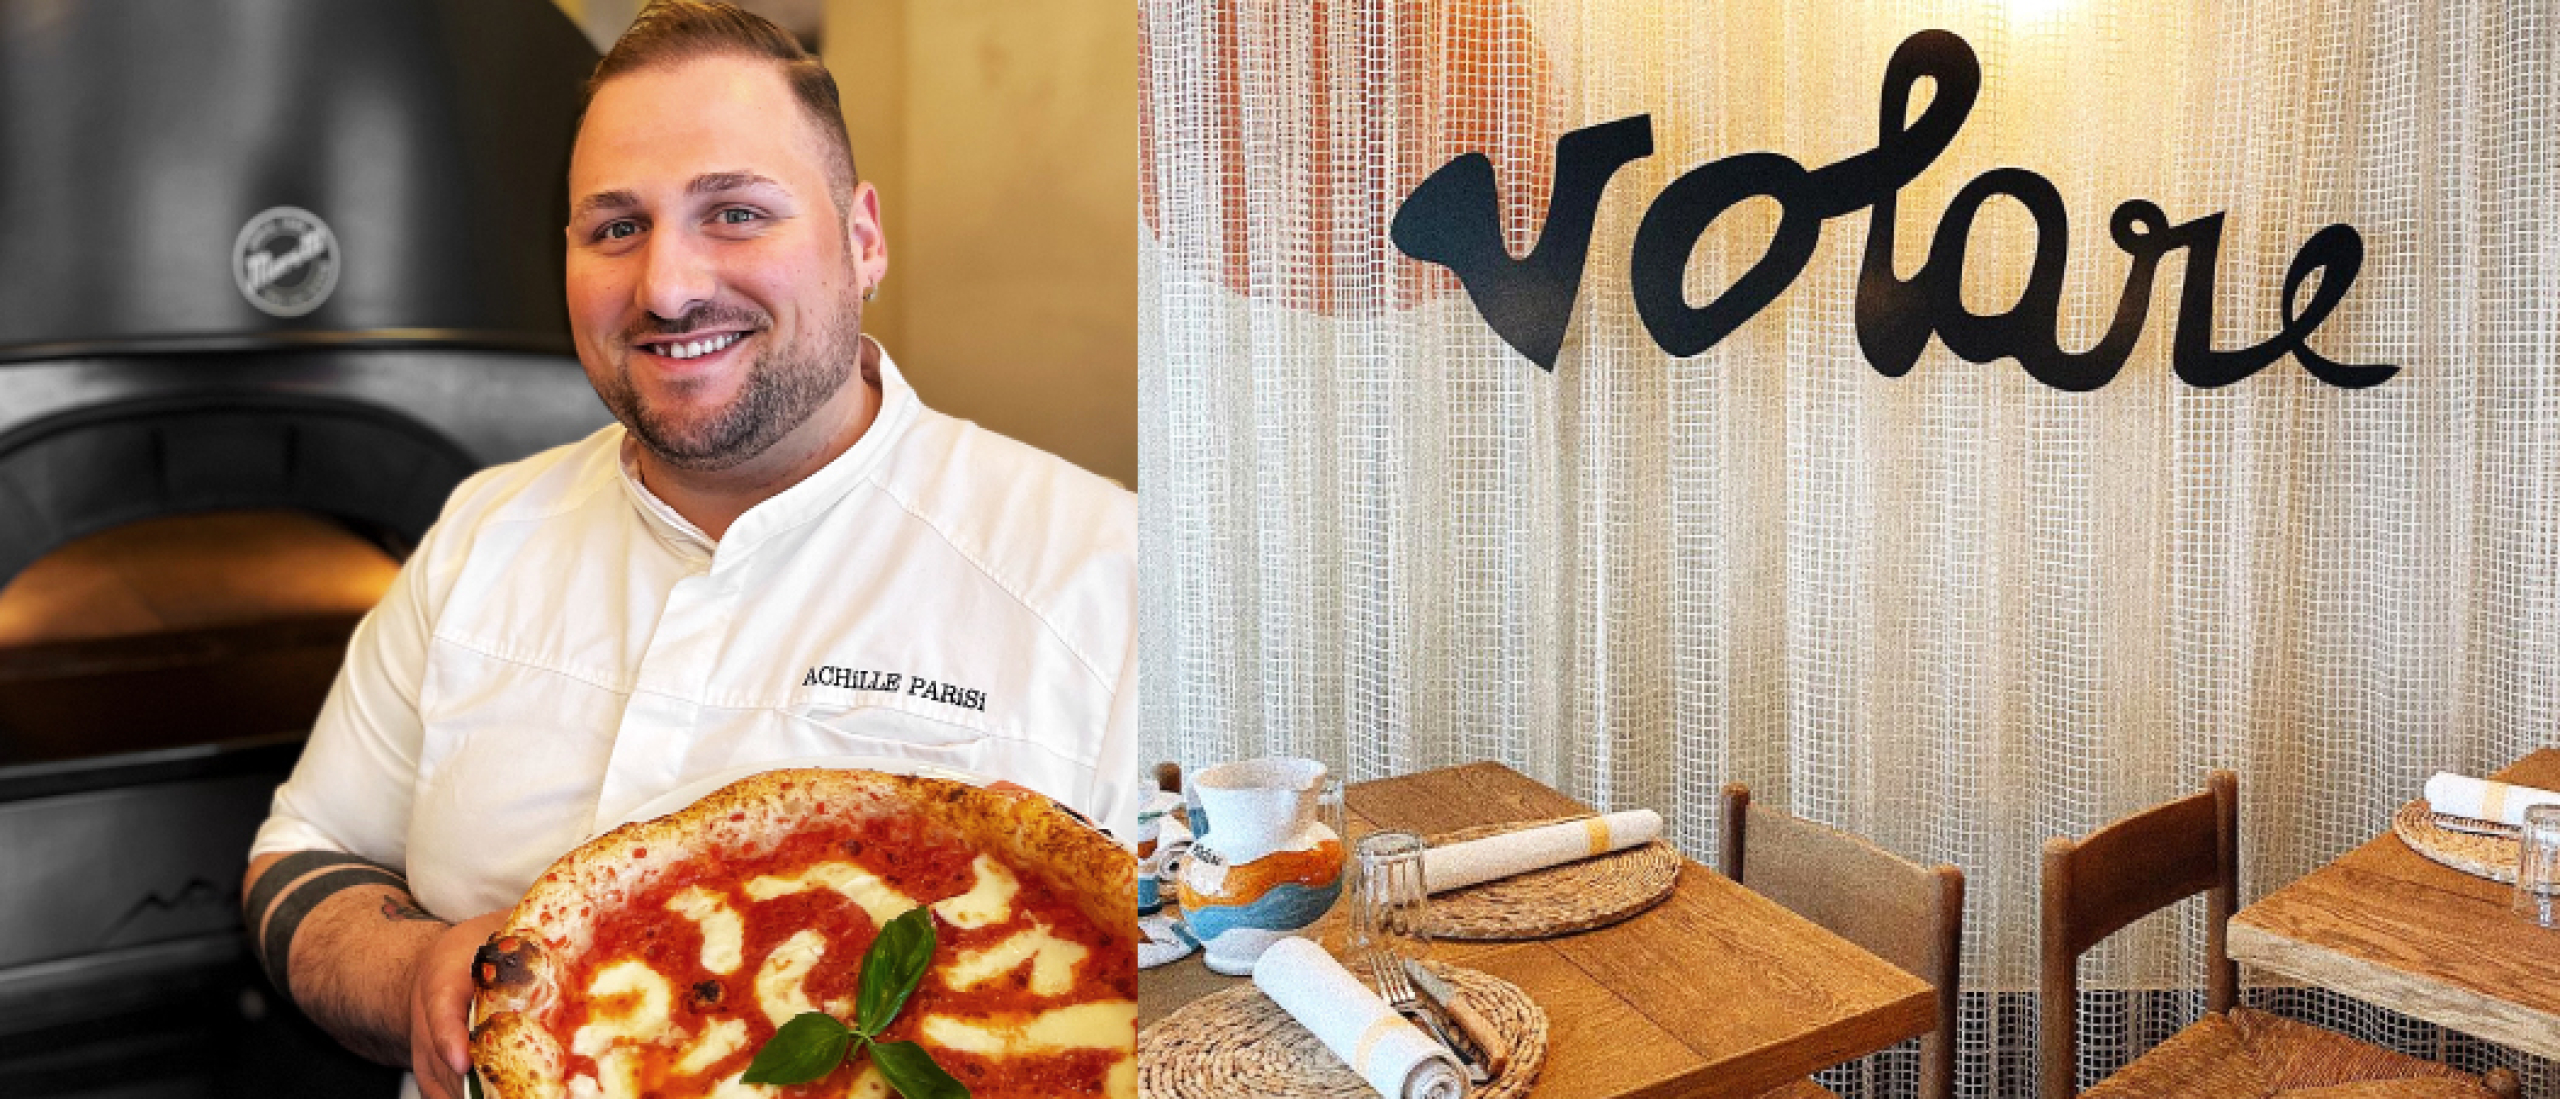 Pizzachef Achille Parisi kiest voor elektrisch bakken